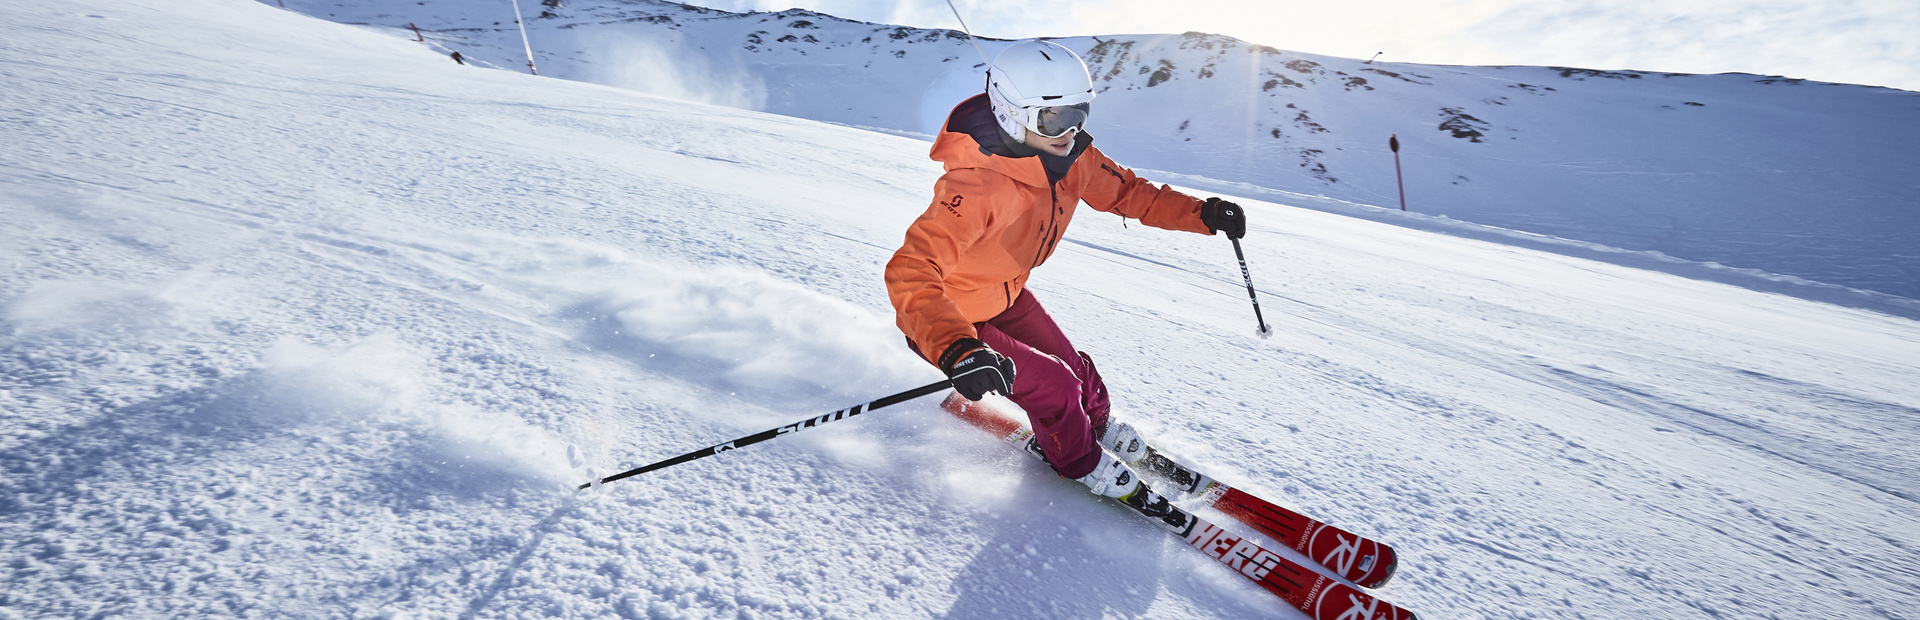 Ski alpin Ischgl, 24.1.2017 